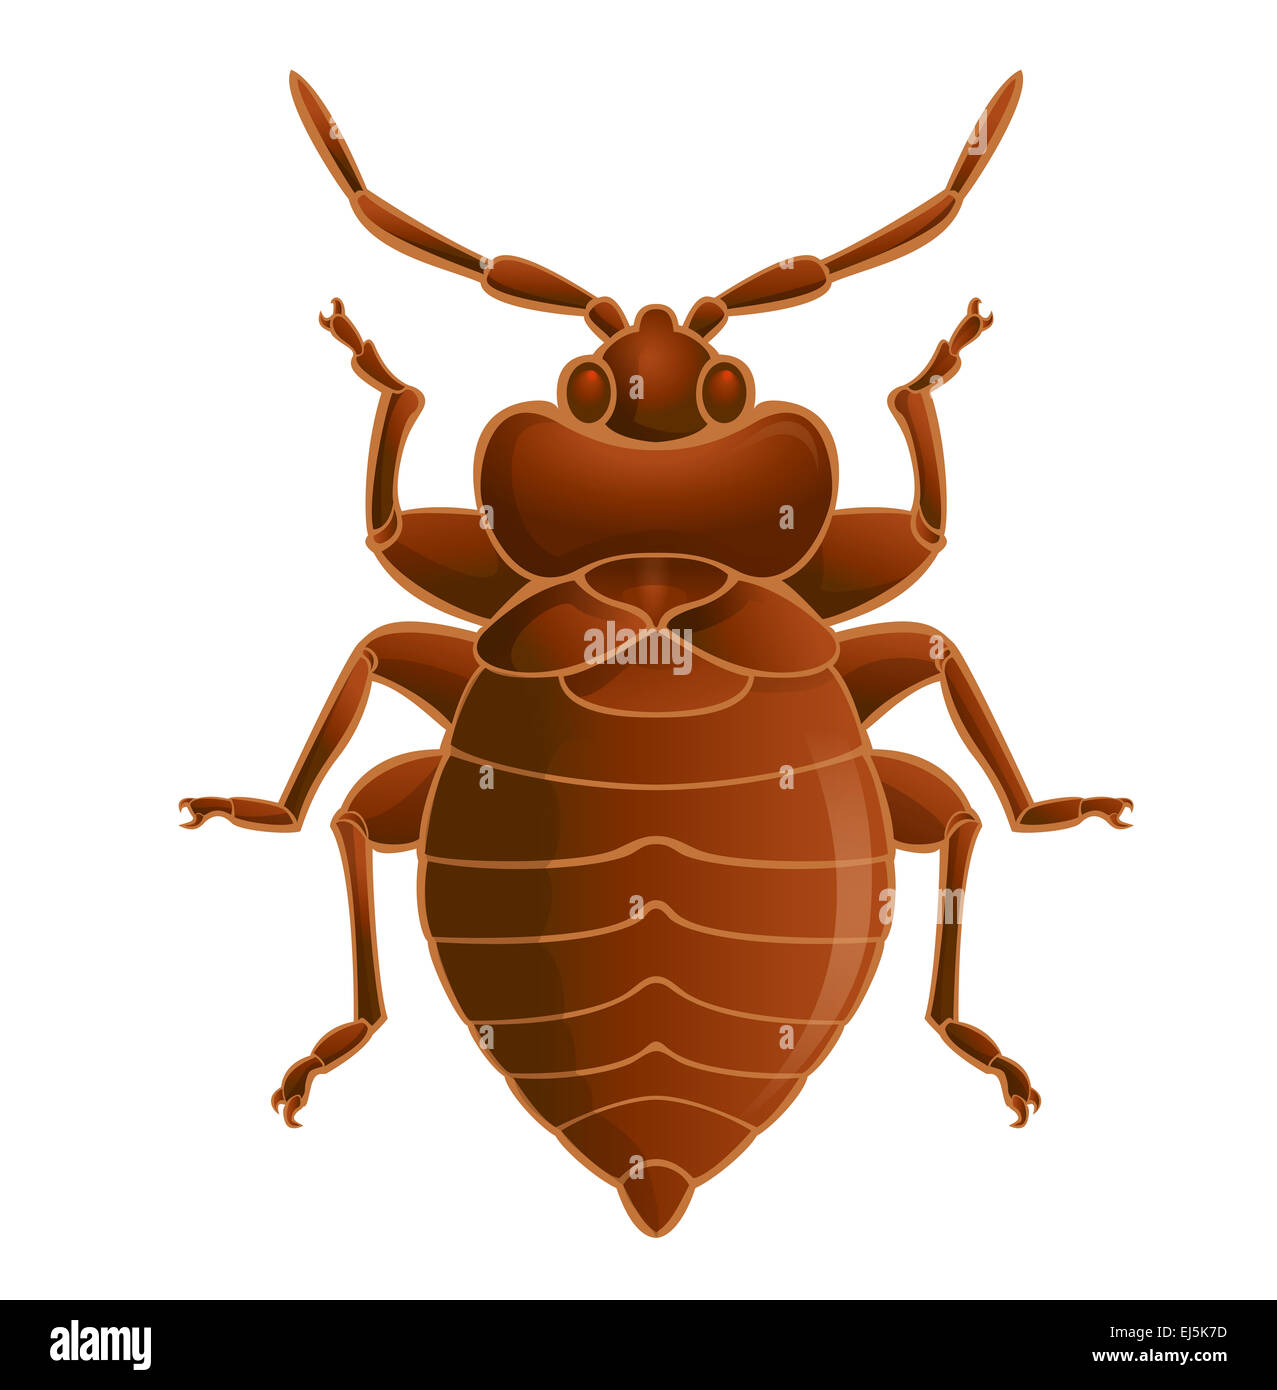 Immagine vettoriale di simbolo di bedbug marrone Foto Stock